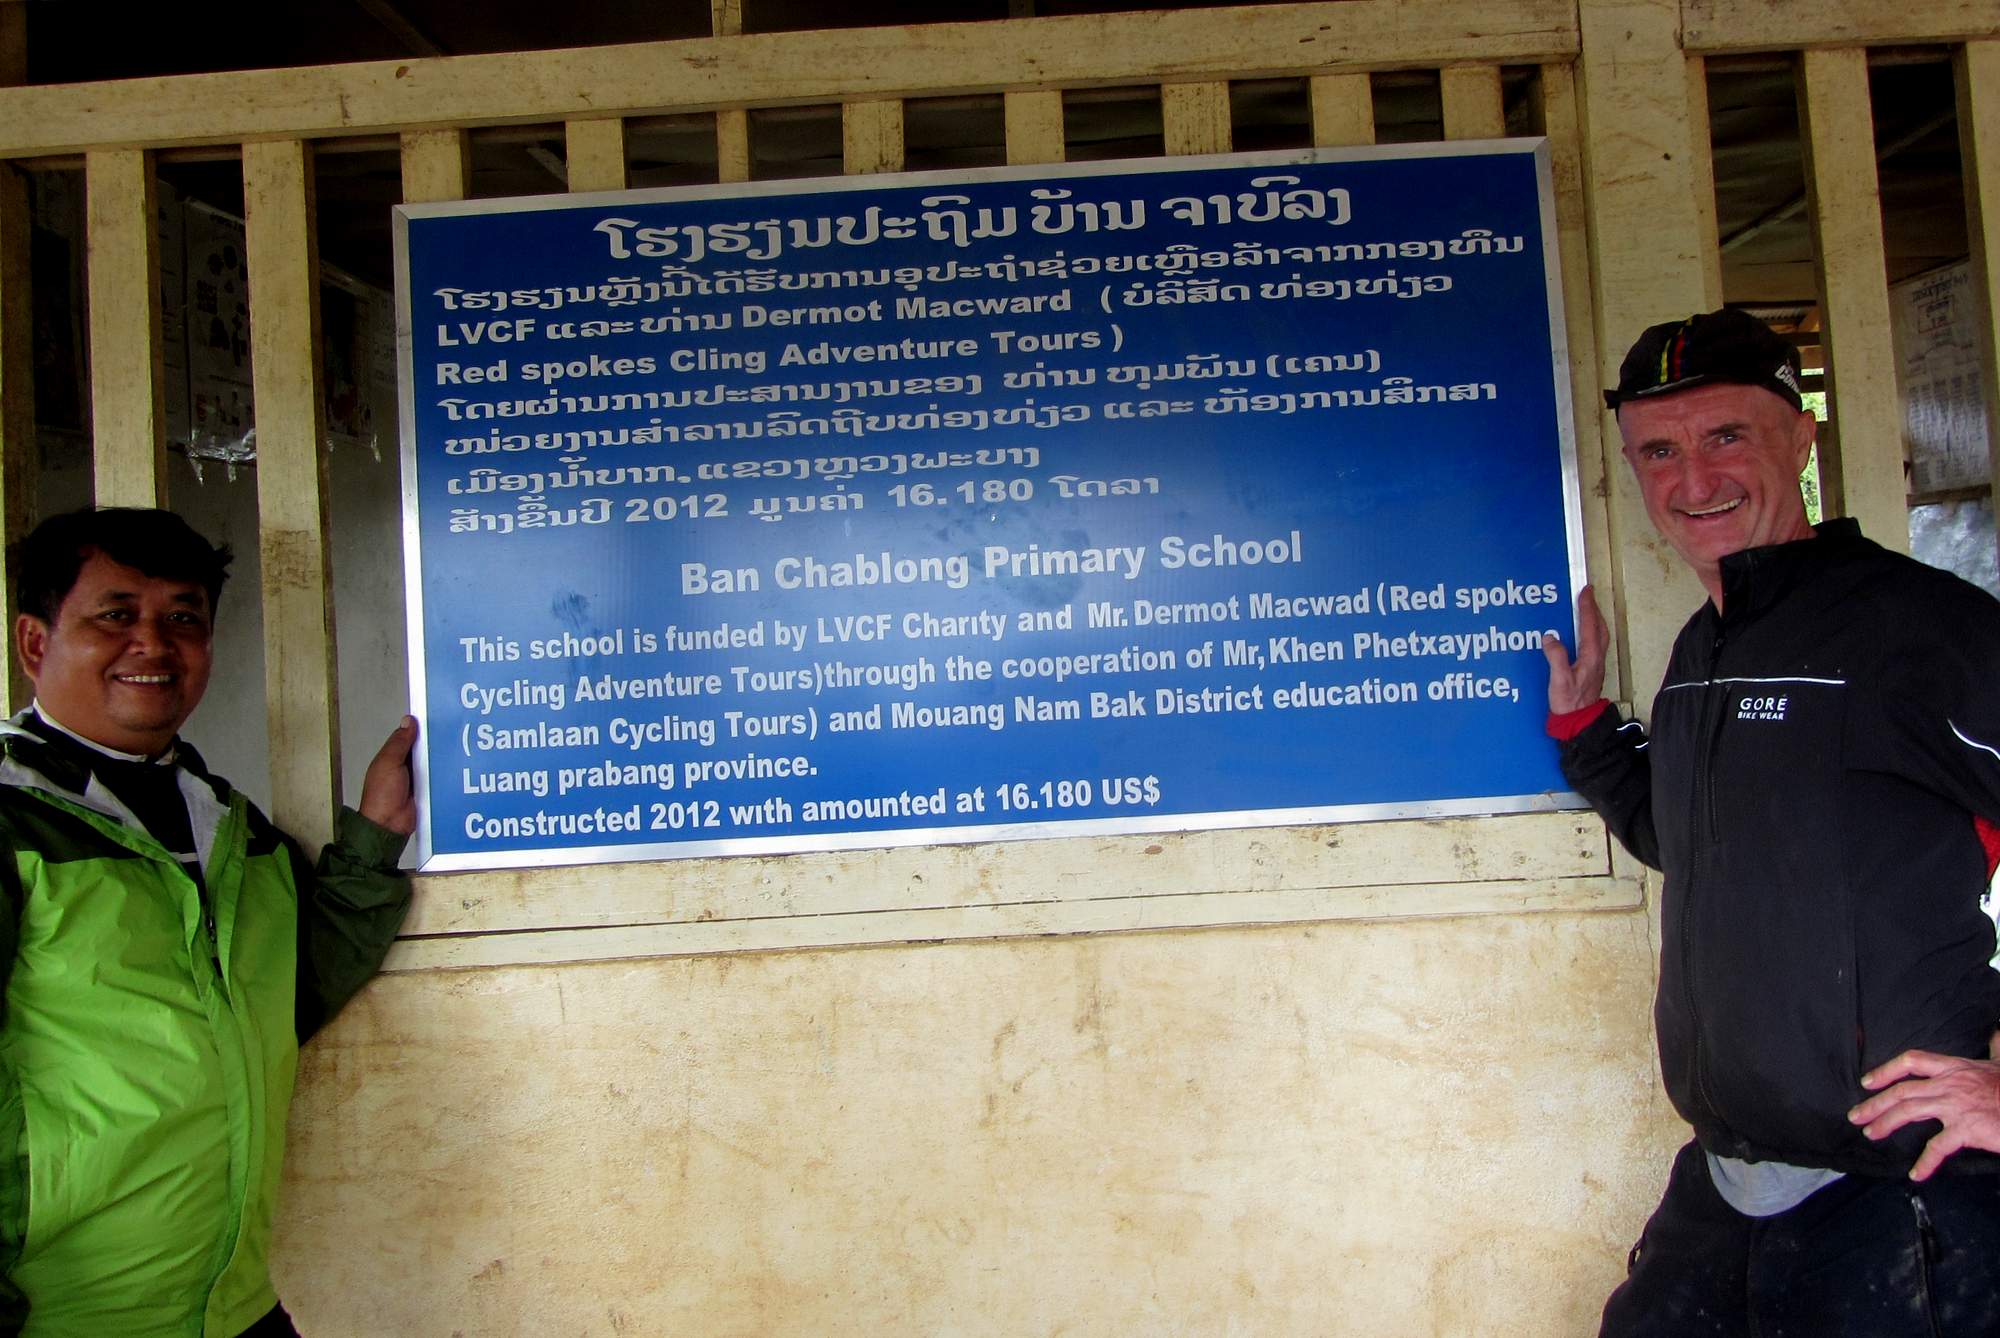 Hmong School Laos